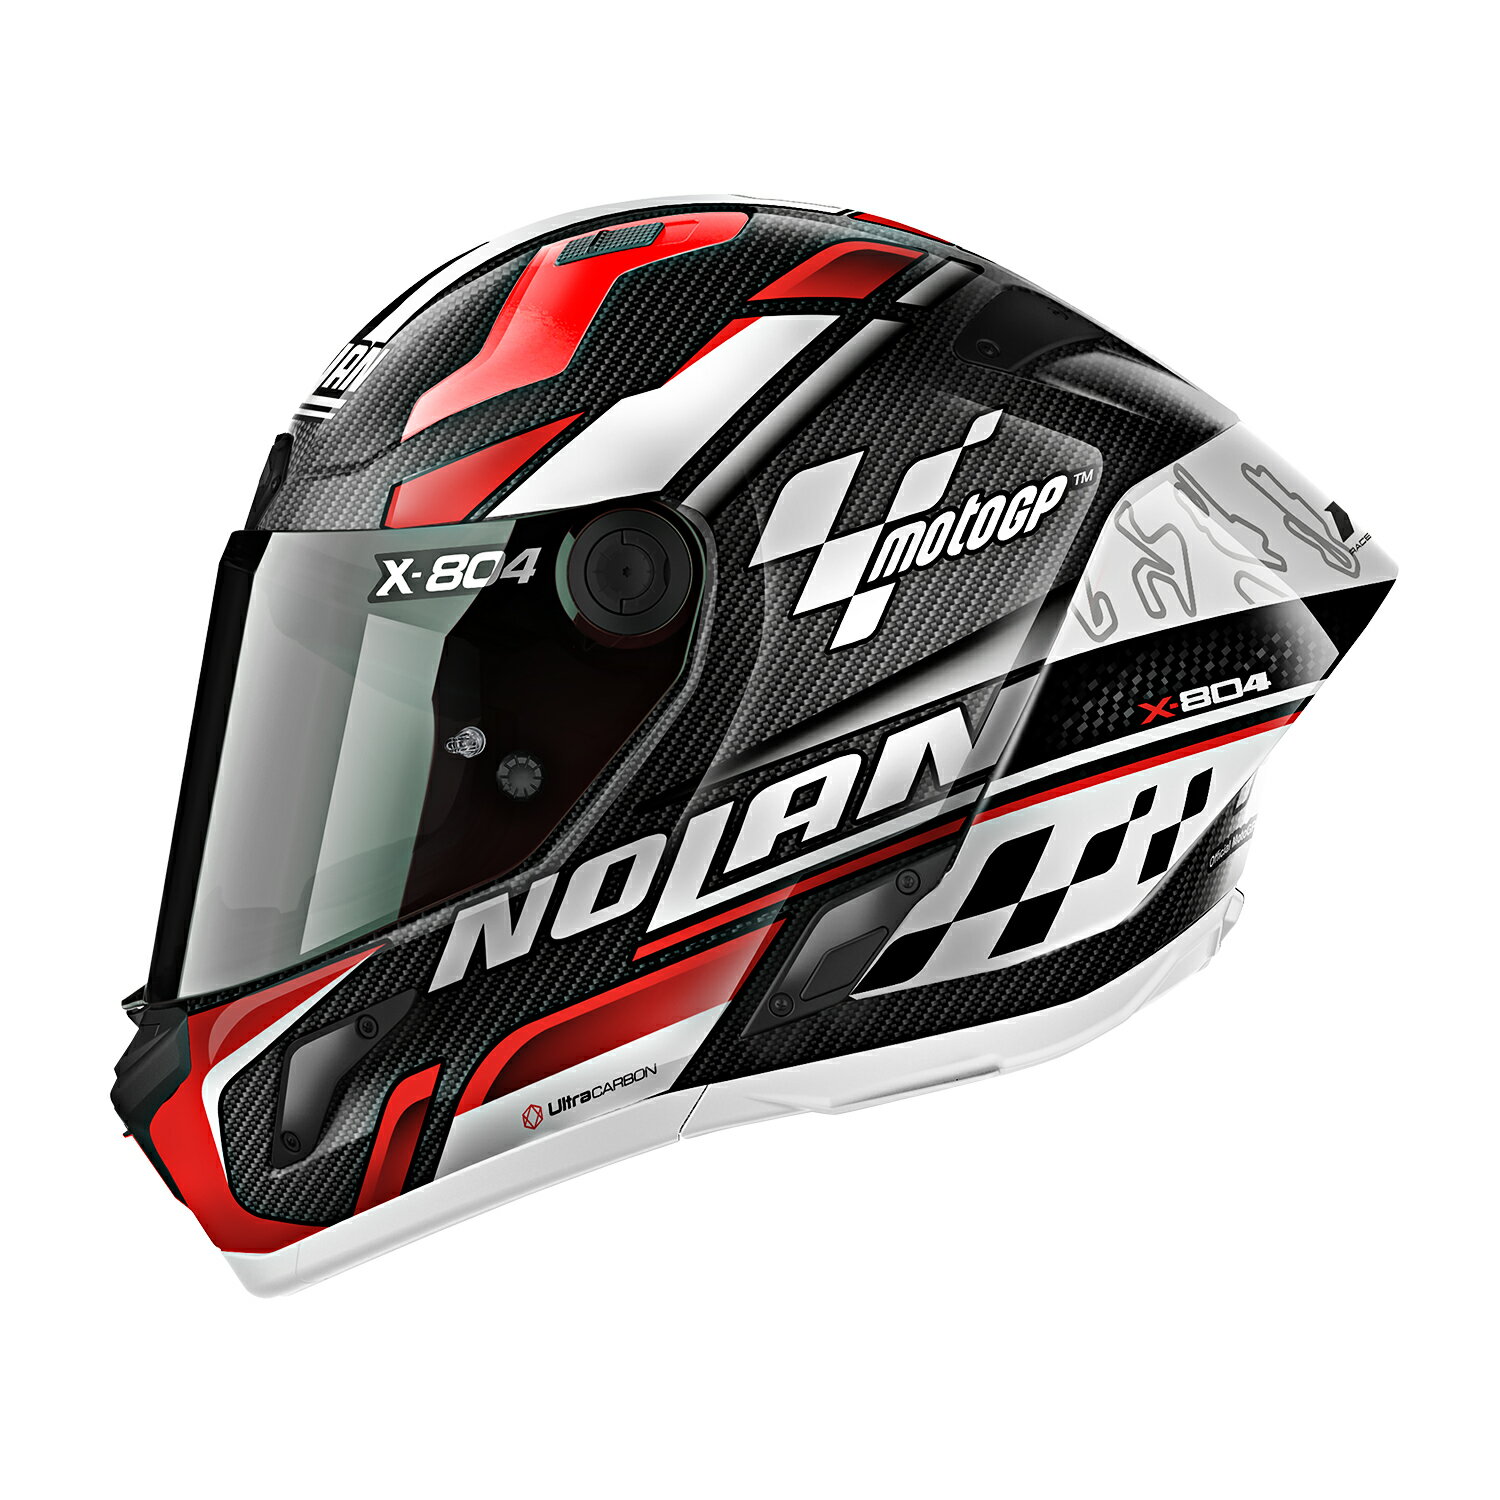 NOLAN ノーラン デイトナ バイク用 ヘルメット フルフェイス Xシリーズ X-804RS ウルトラカーボン MOTOGP(MOTOGP/22) Sサイズ(55-56cm) 44343